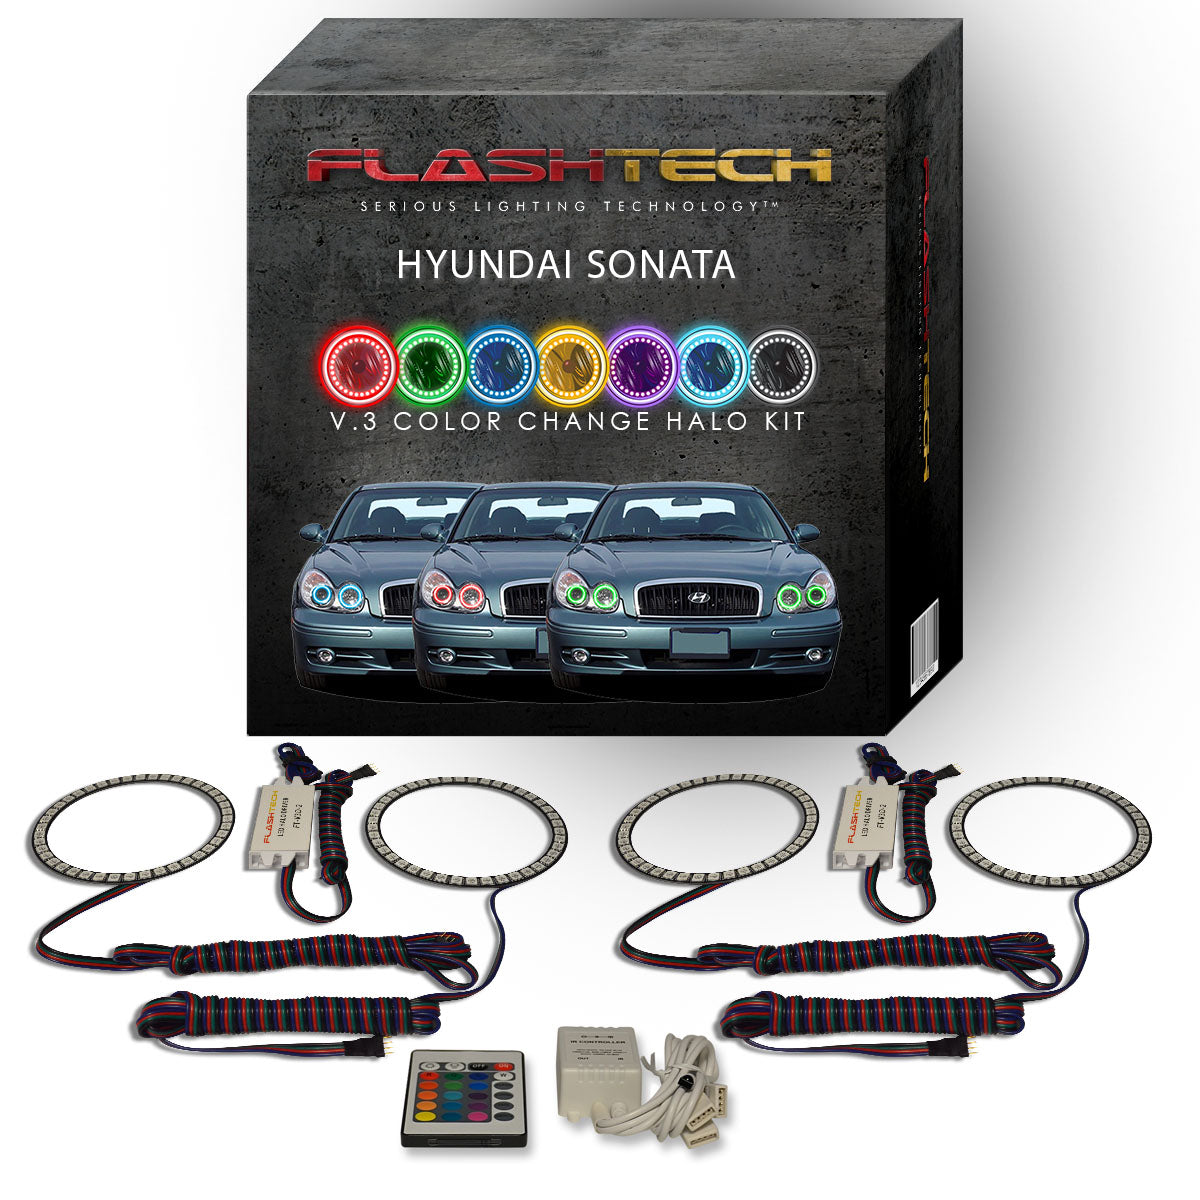 Hyundai-Sonata-2002, 2003, 2004, 2005-LED-Halo-Headlights-RGB-Bluetooth RF Remote-HY-SO0205-V3HBTRF